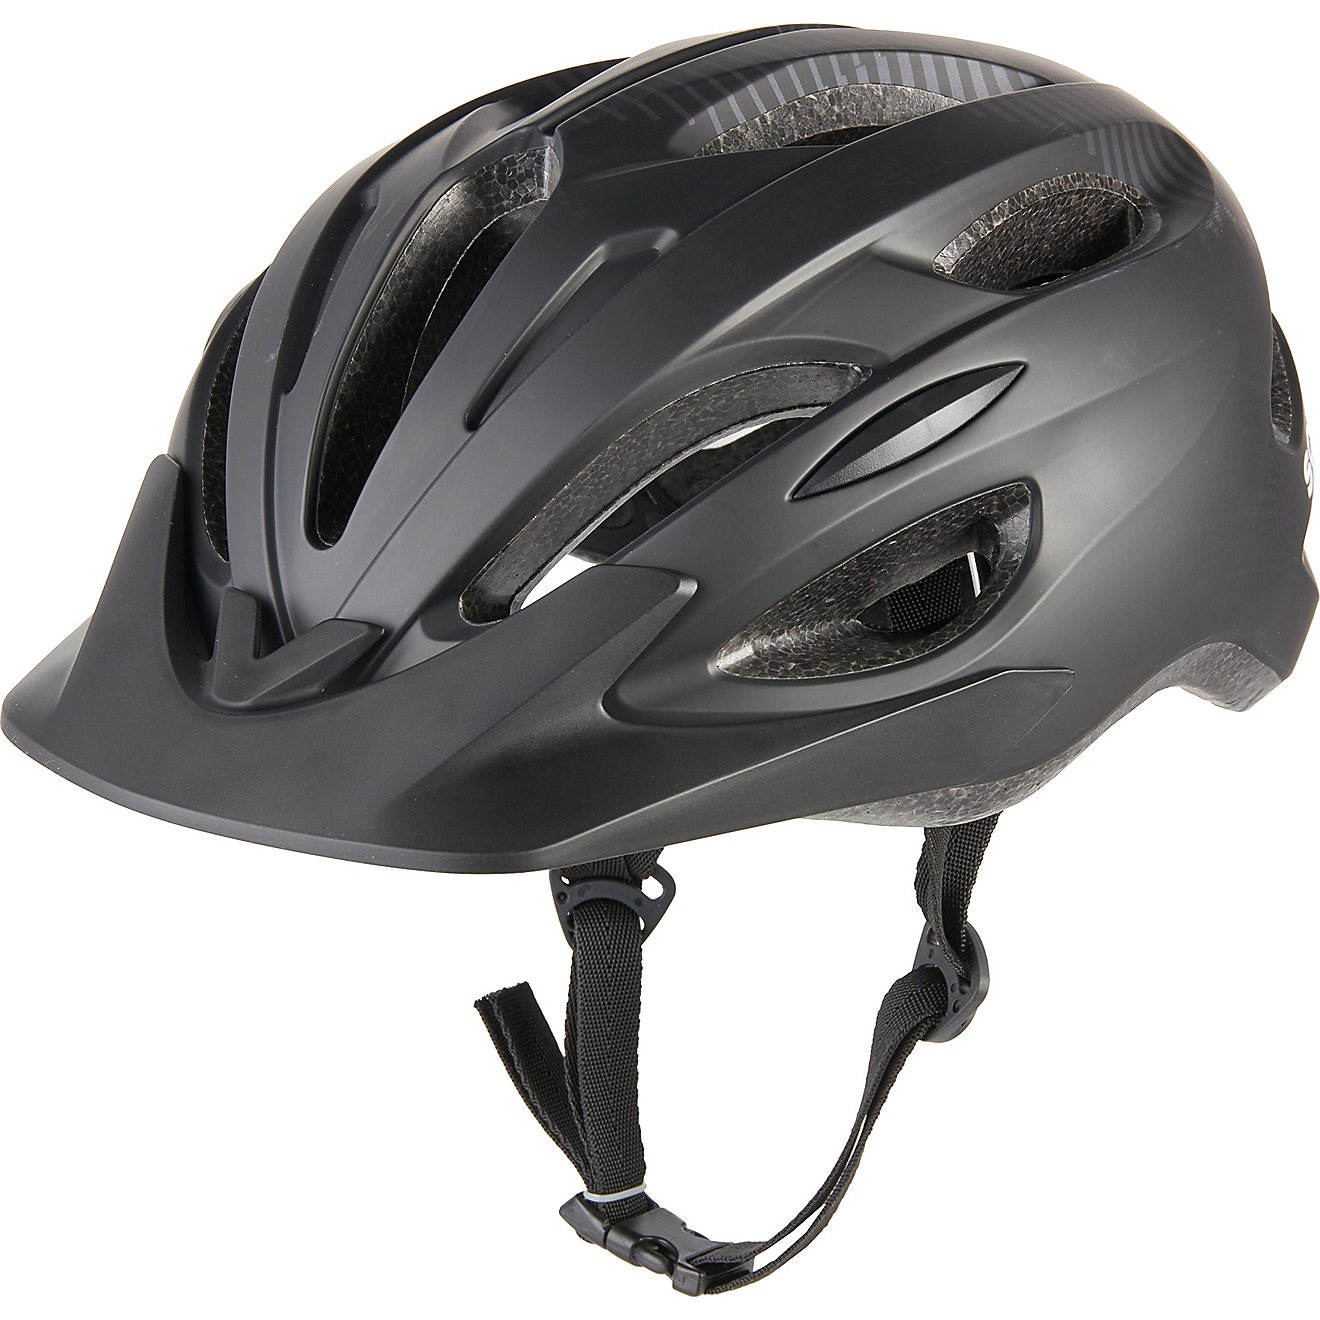 Schwinn Midvale Dual-Sport Bicycle Helmet                                                                                        - view number 1